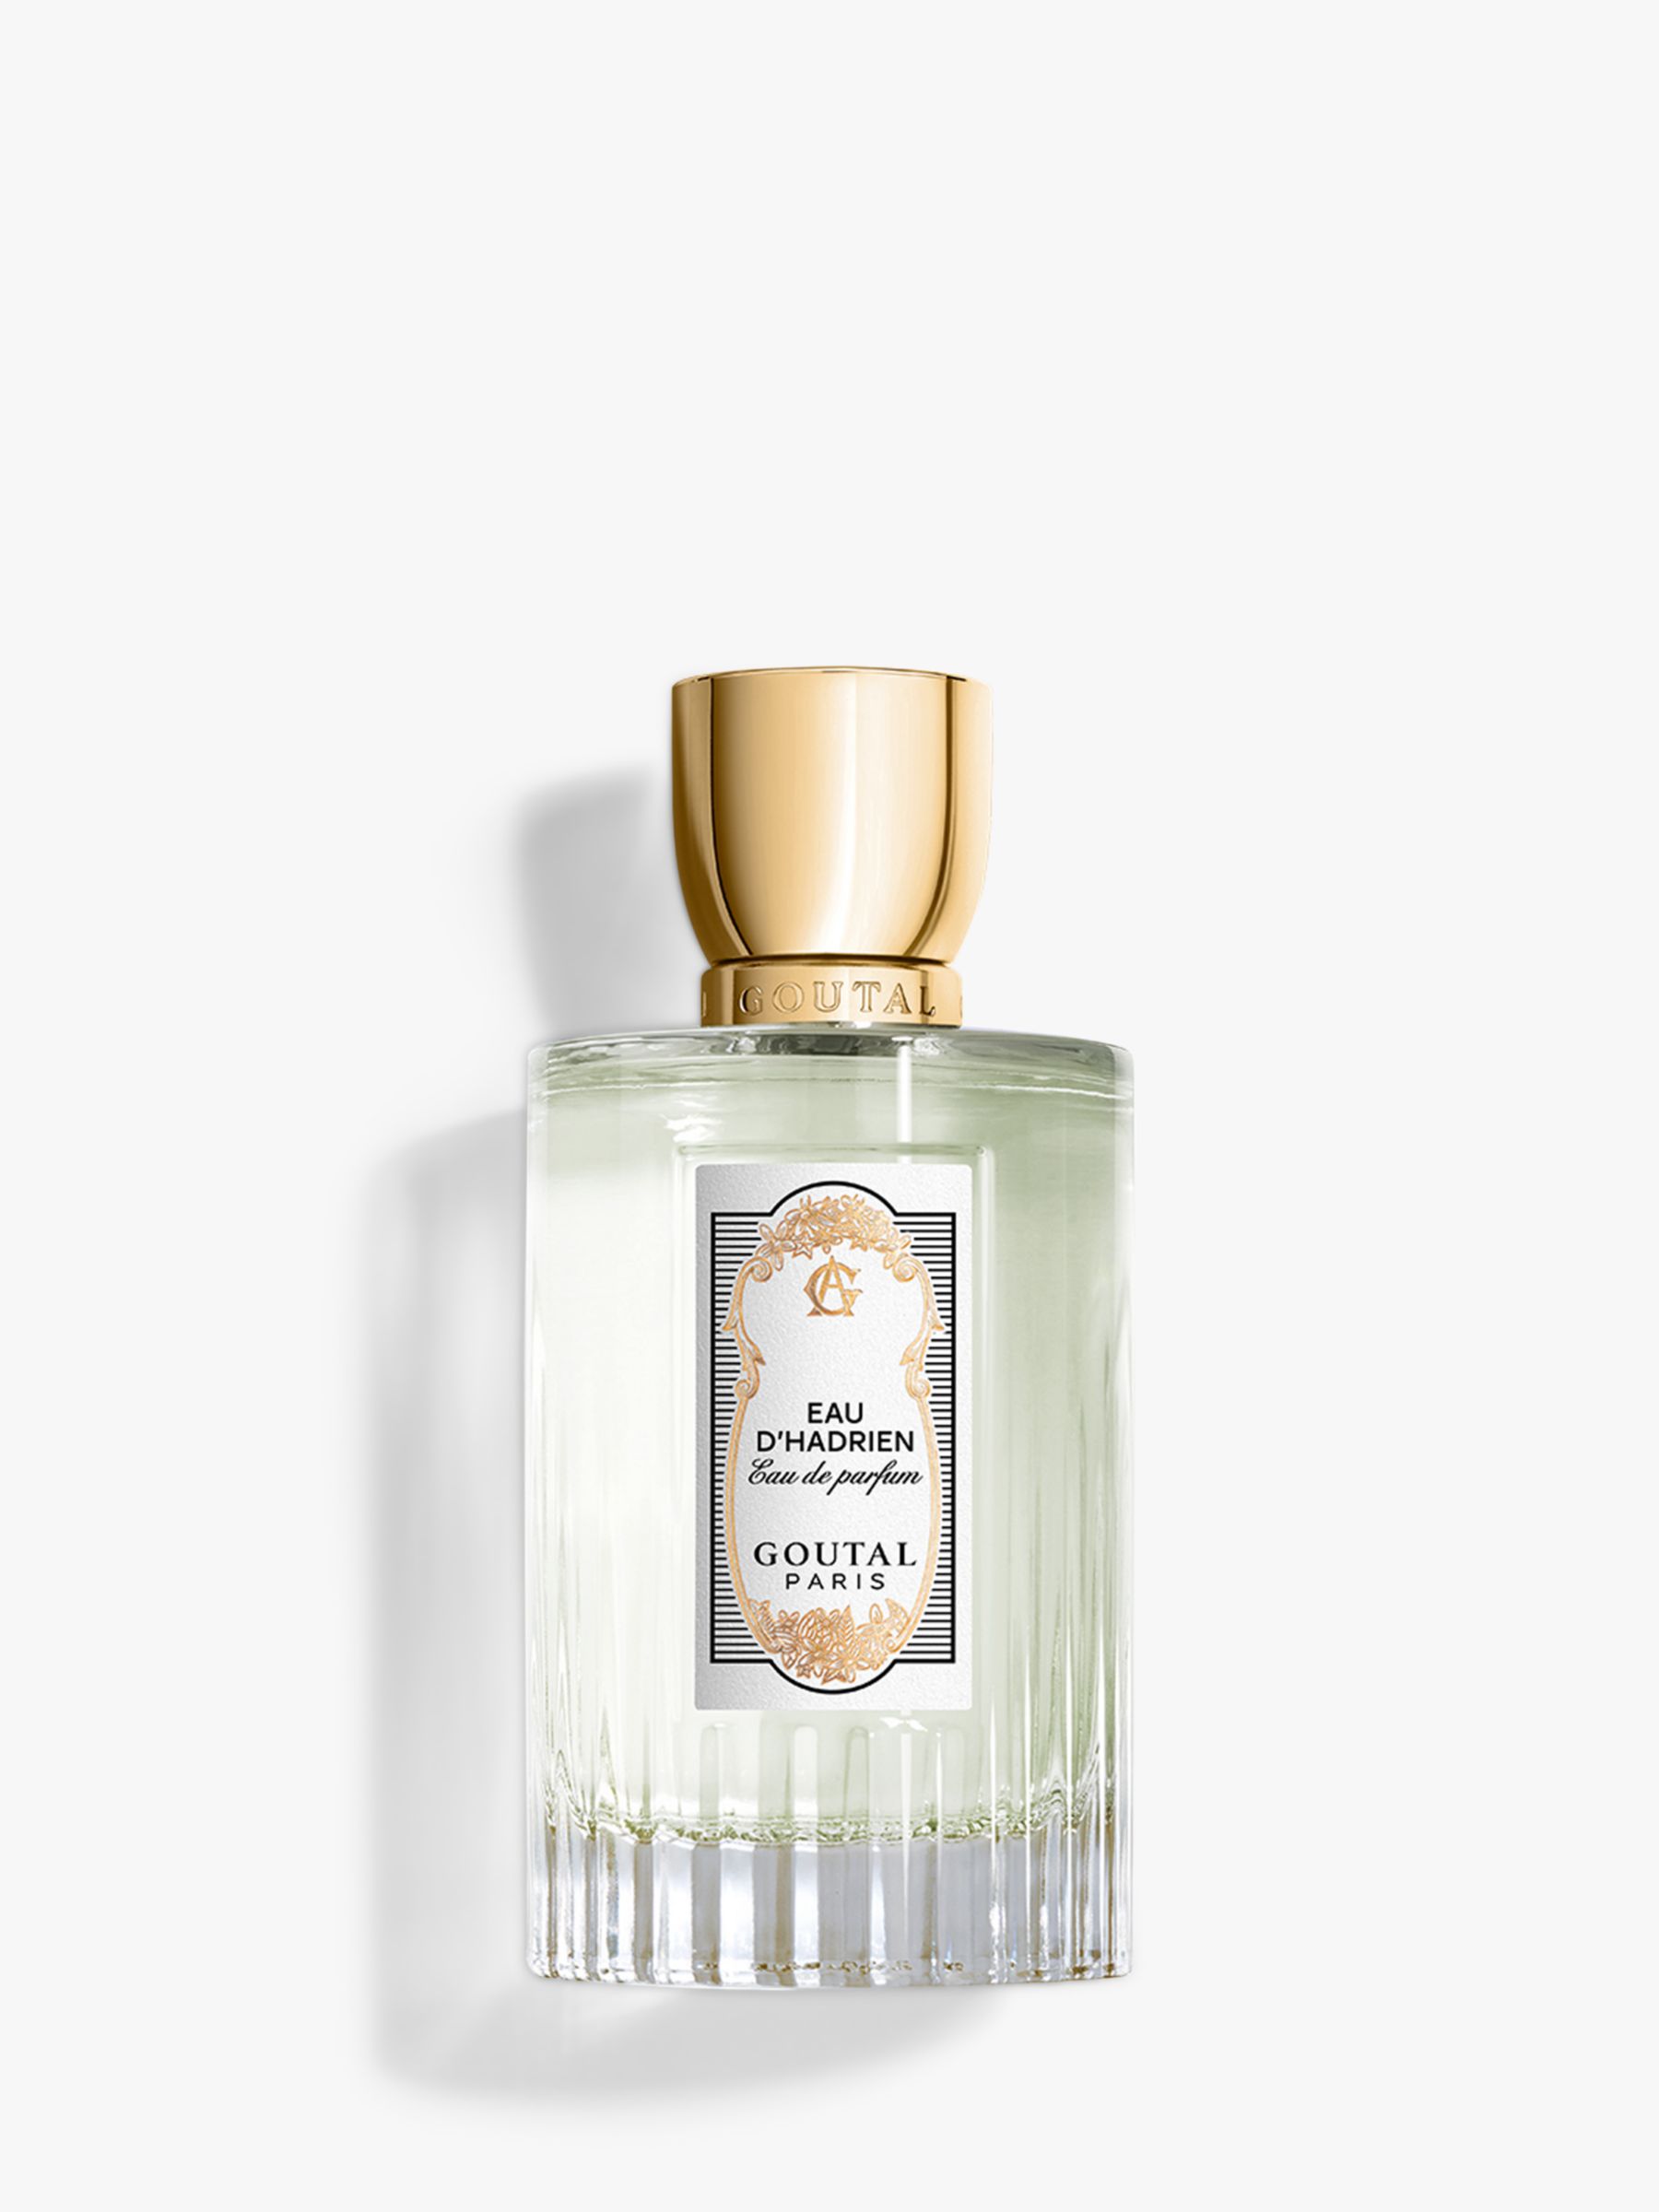 Goutal Eau d'Hadrien Eau de Parfum, 100ml at John Lewis & Partners